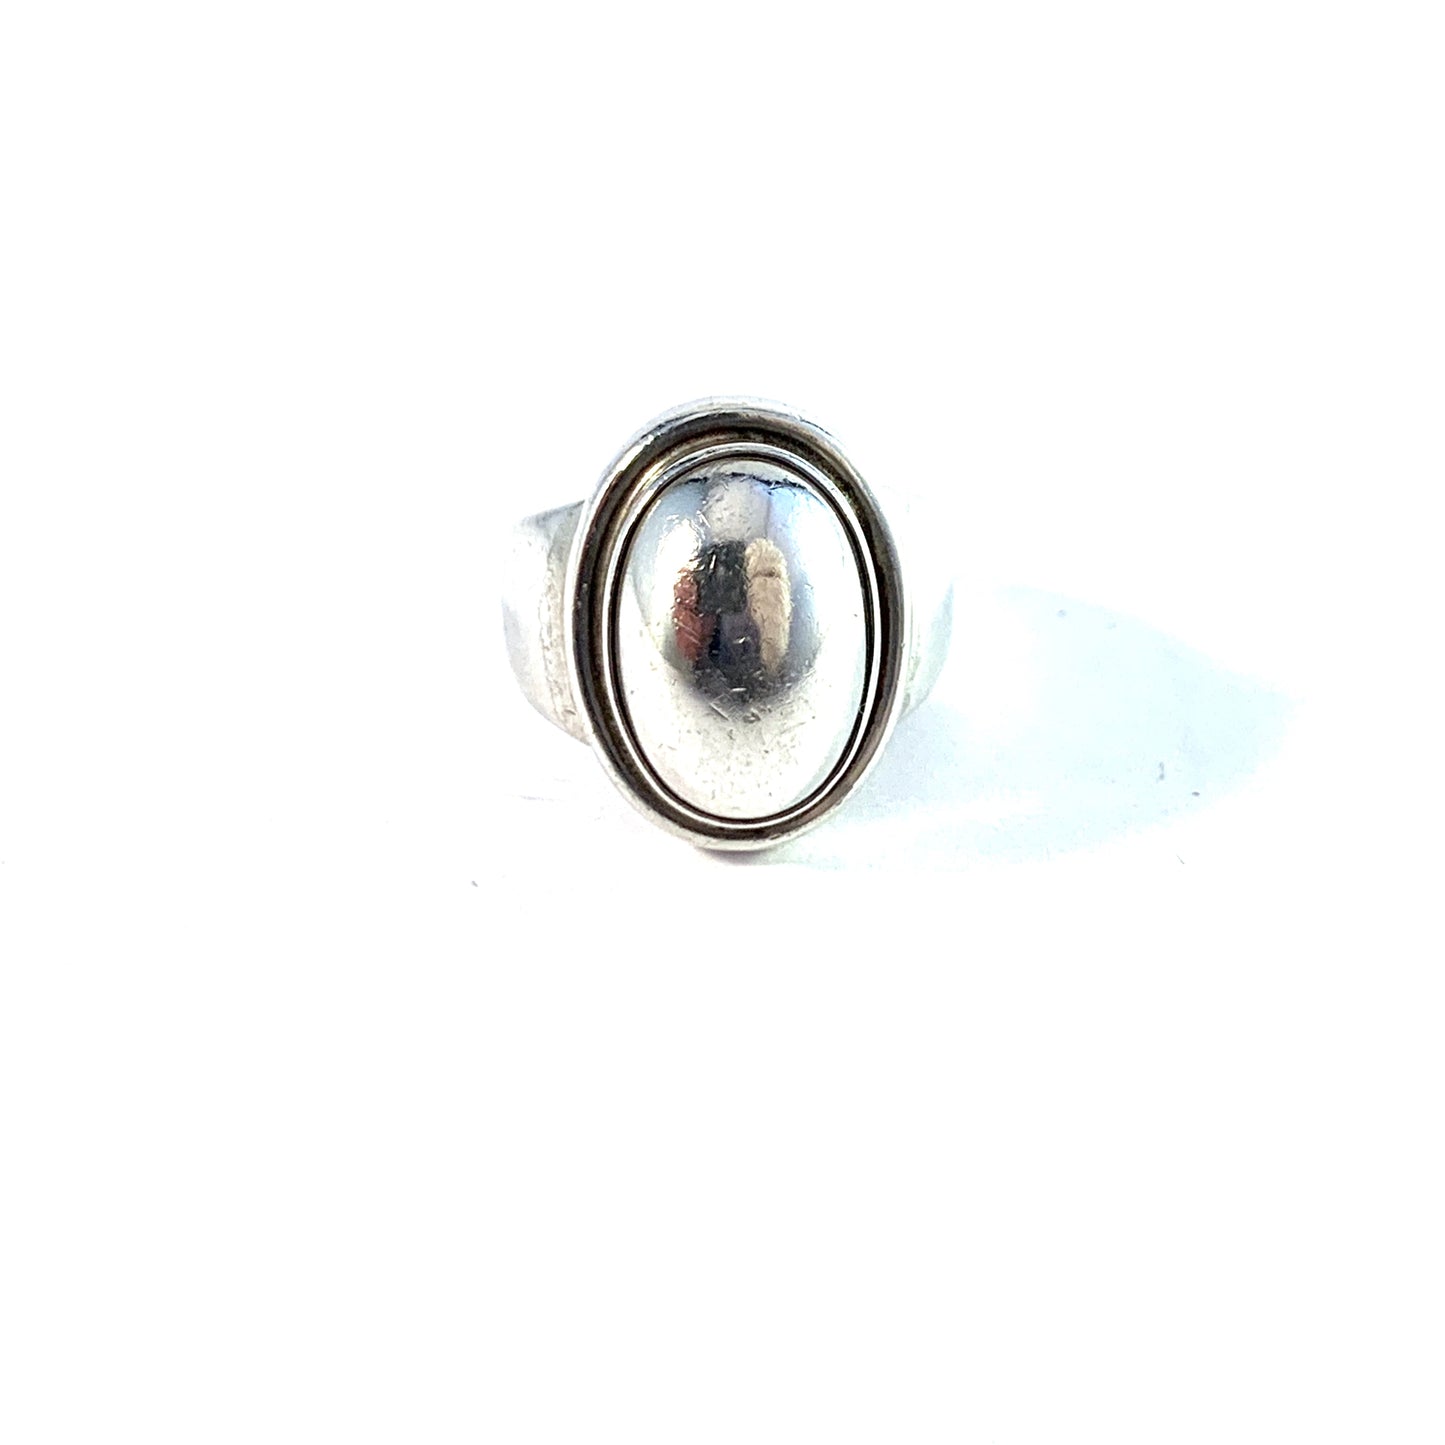 Harald Nielsen for Georg Jensen, Denmark.  Vintage Sterling Silver Pinky Ring. Design 46B